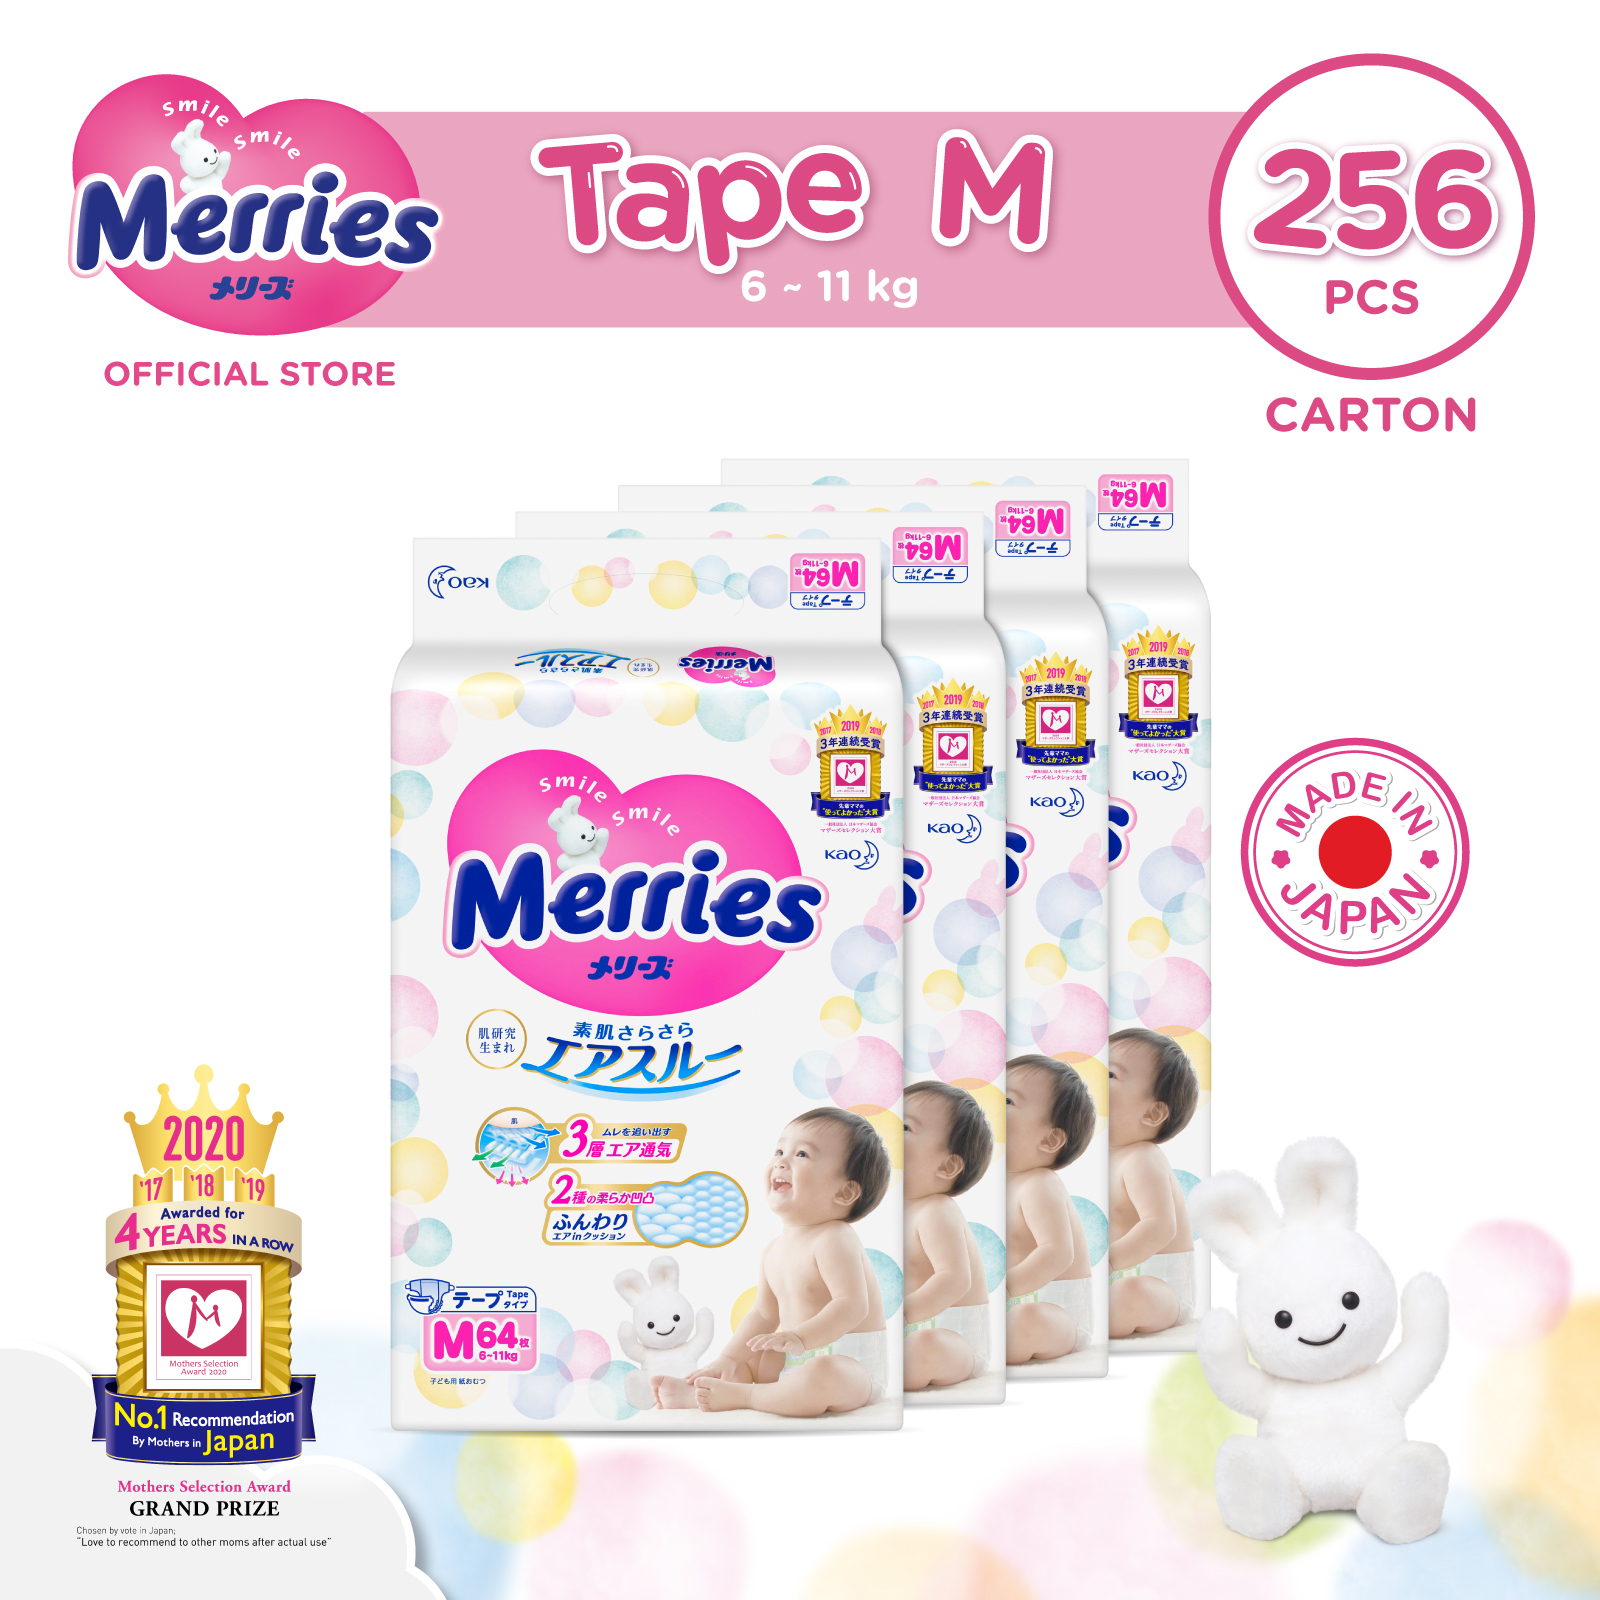 Merries Tape Diapers Carton M64s x 4 packs (6 - 11 kg)